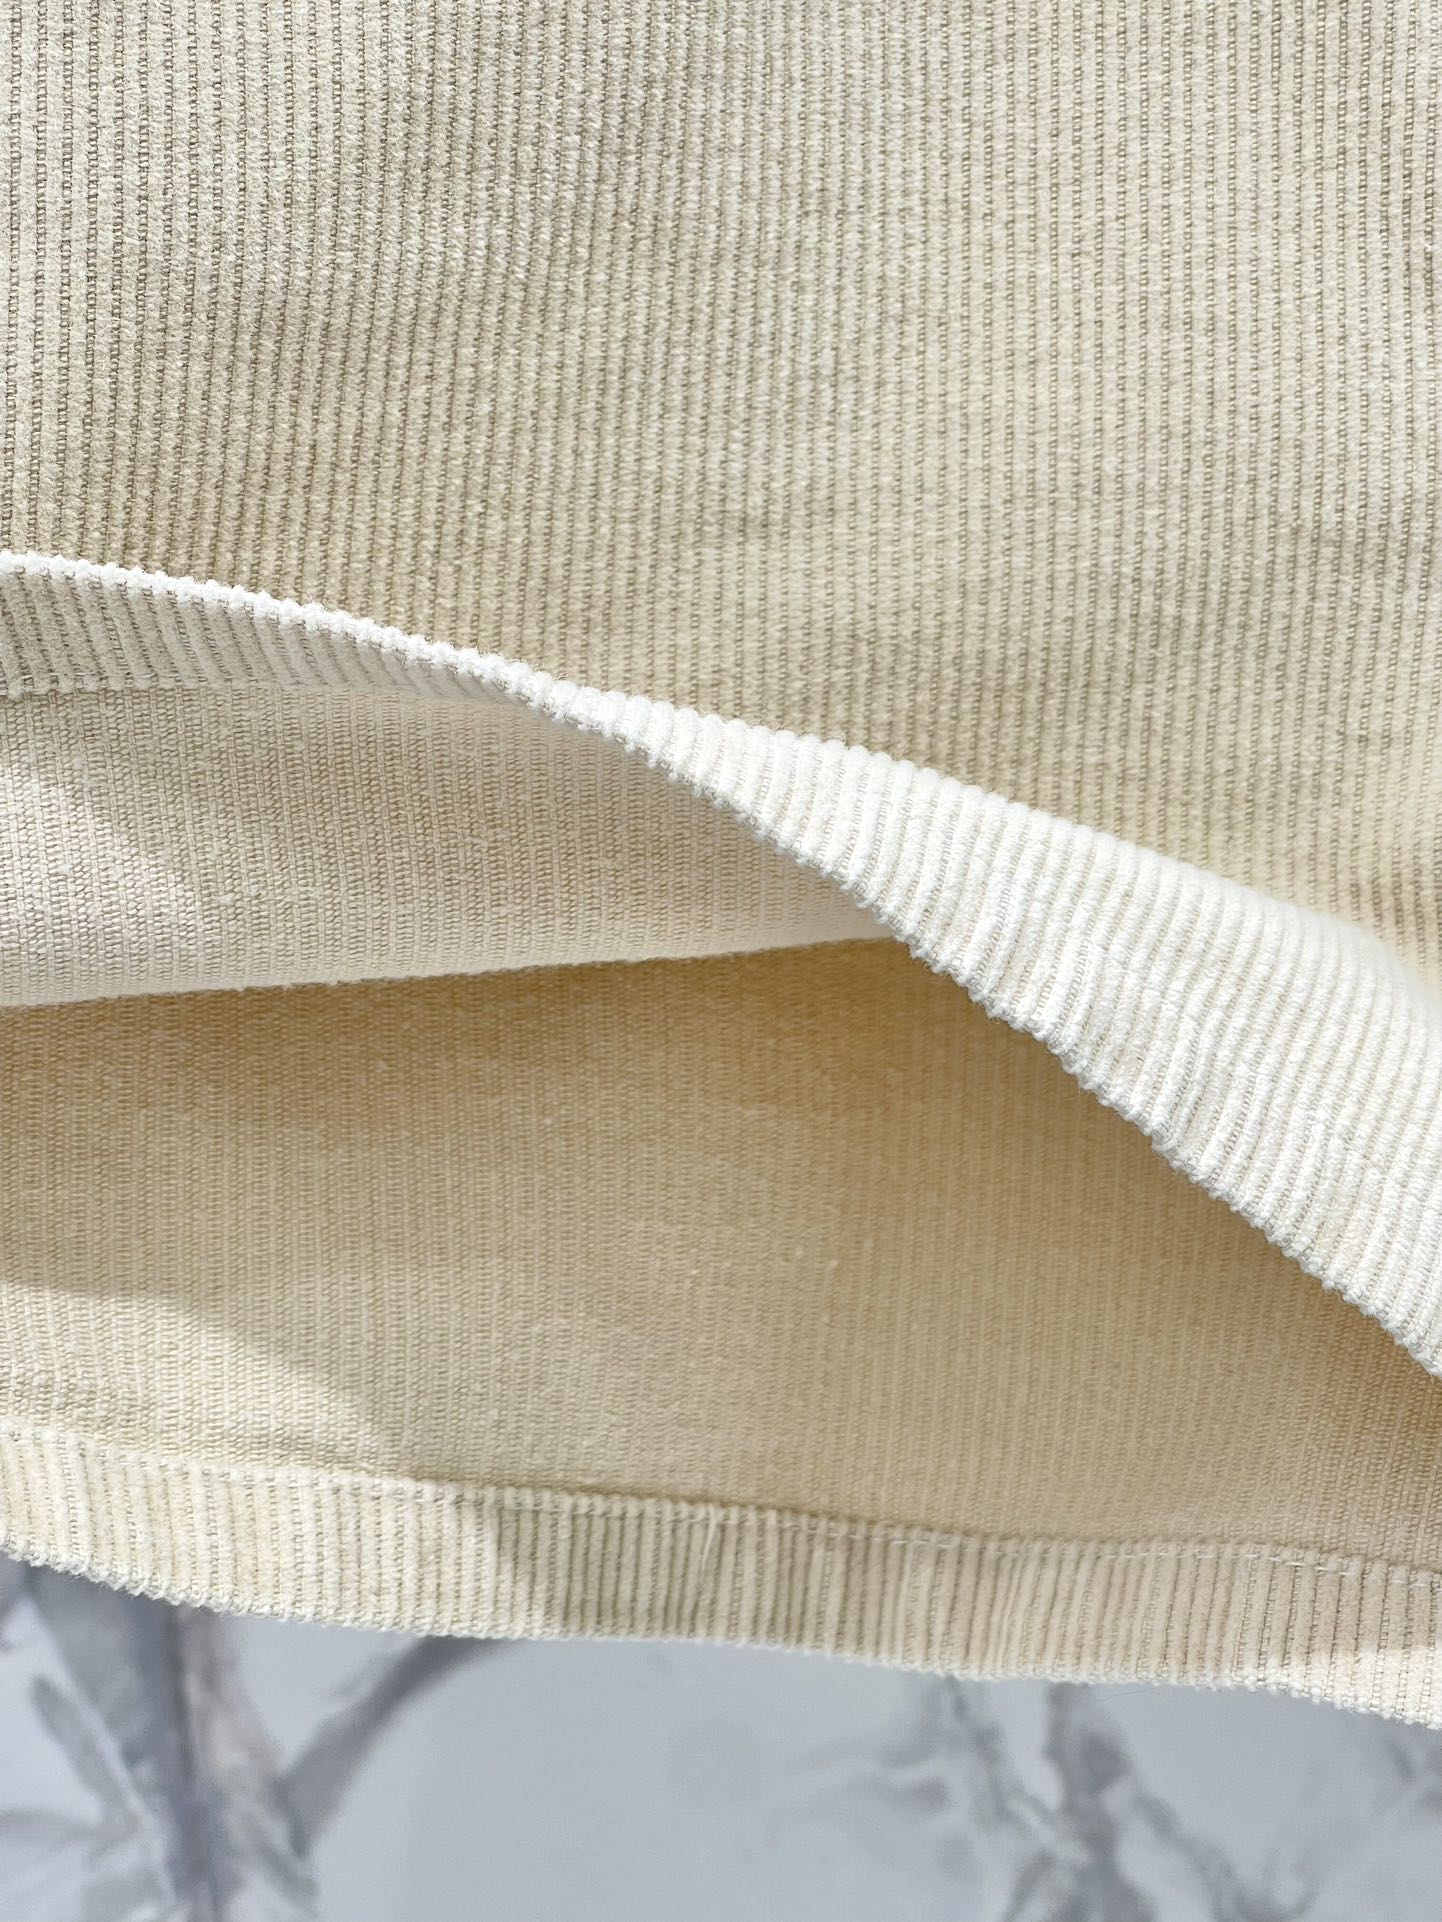 NEW夏のミュウミュウ パンツ偽物 ショットズボン 美脚 デニム素材 A形 シンプル レディース ホワイト_5